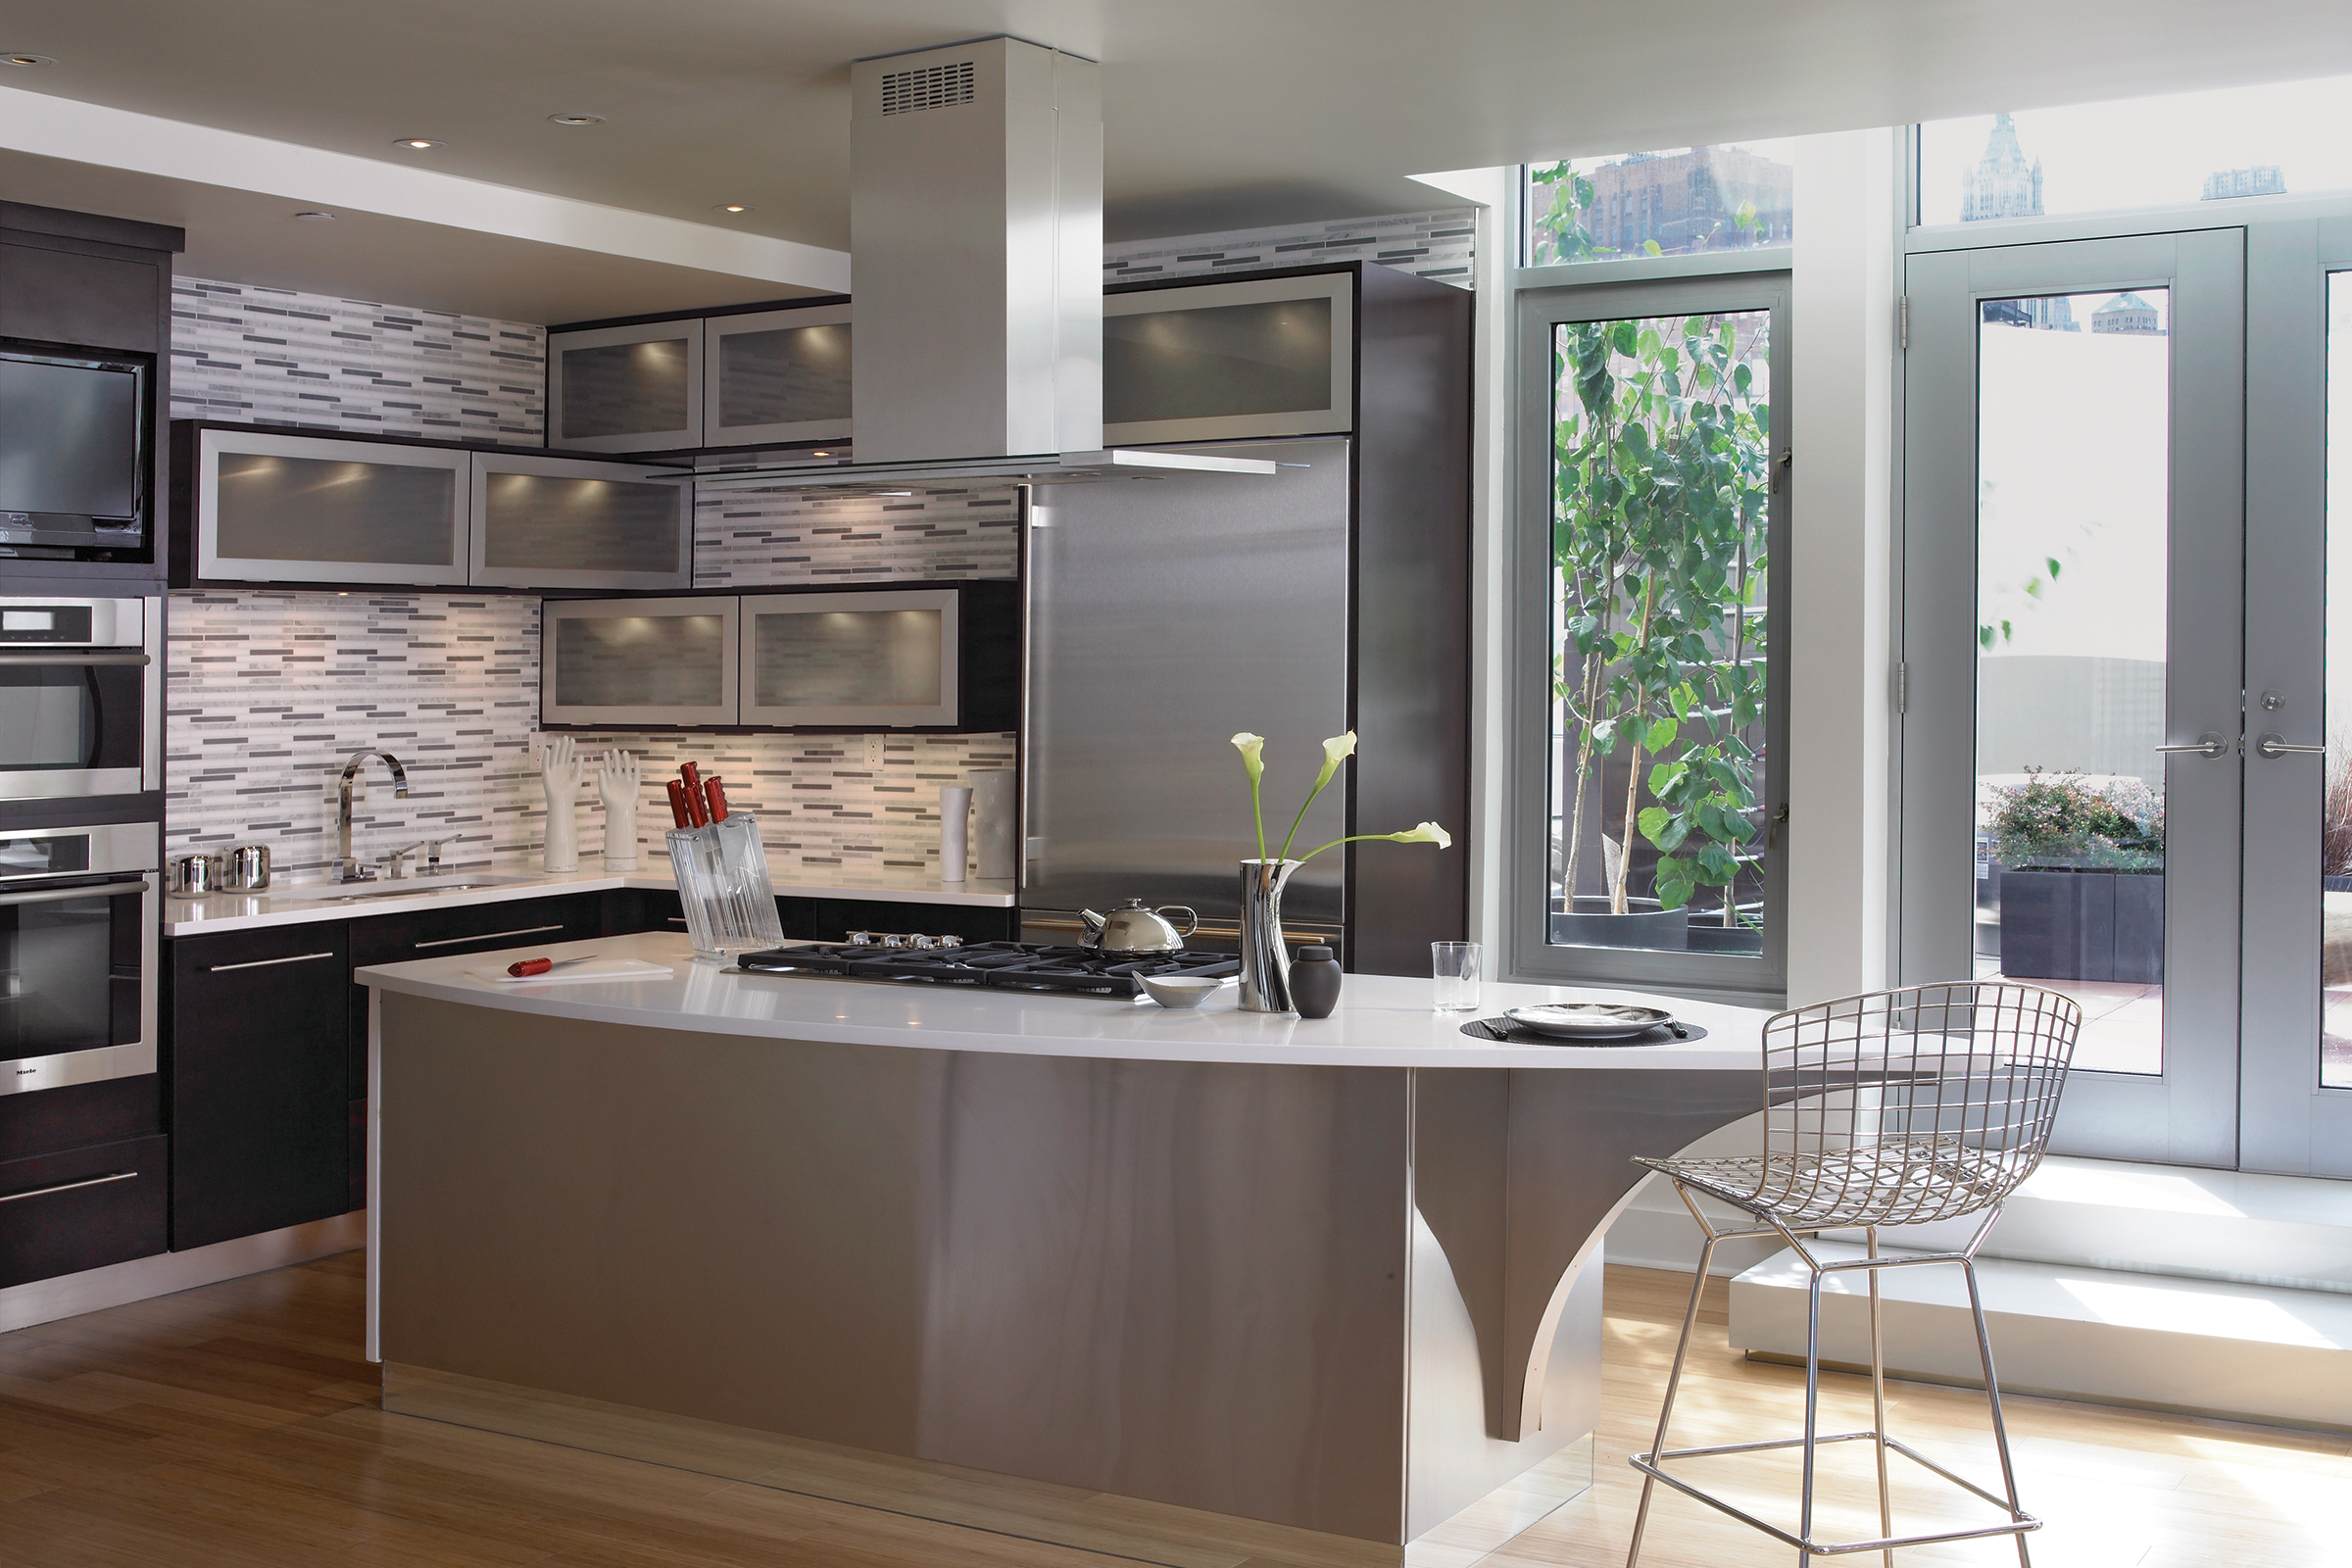 Stainless steel-clad kitchen island in a Modern KraftMaid kitchen